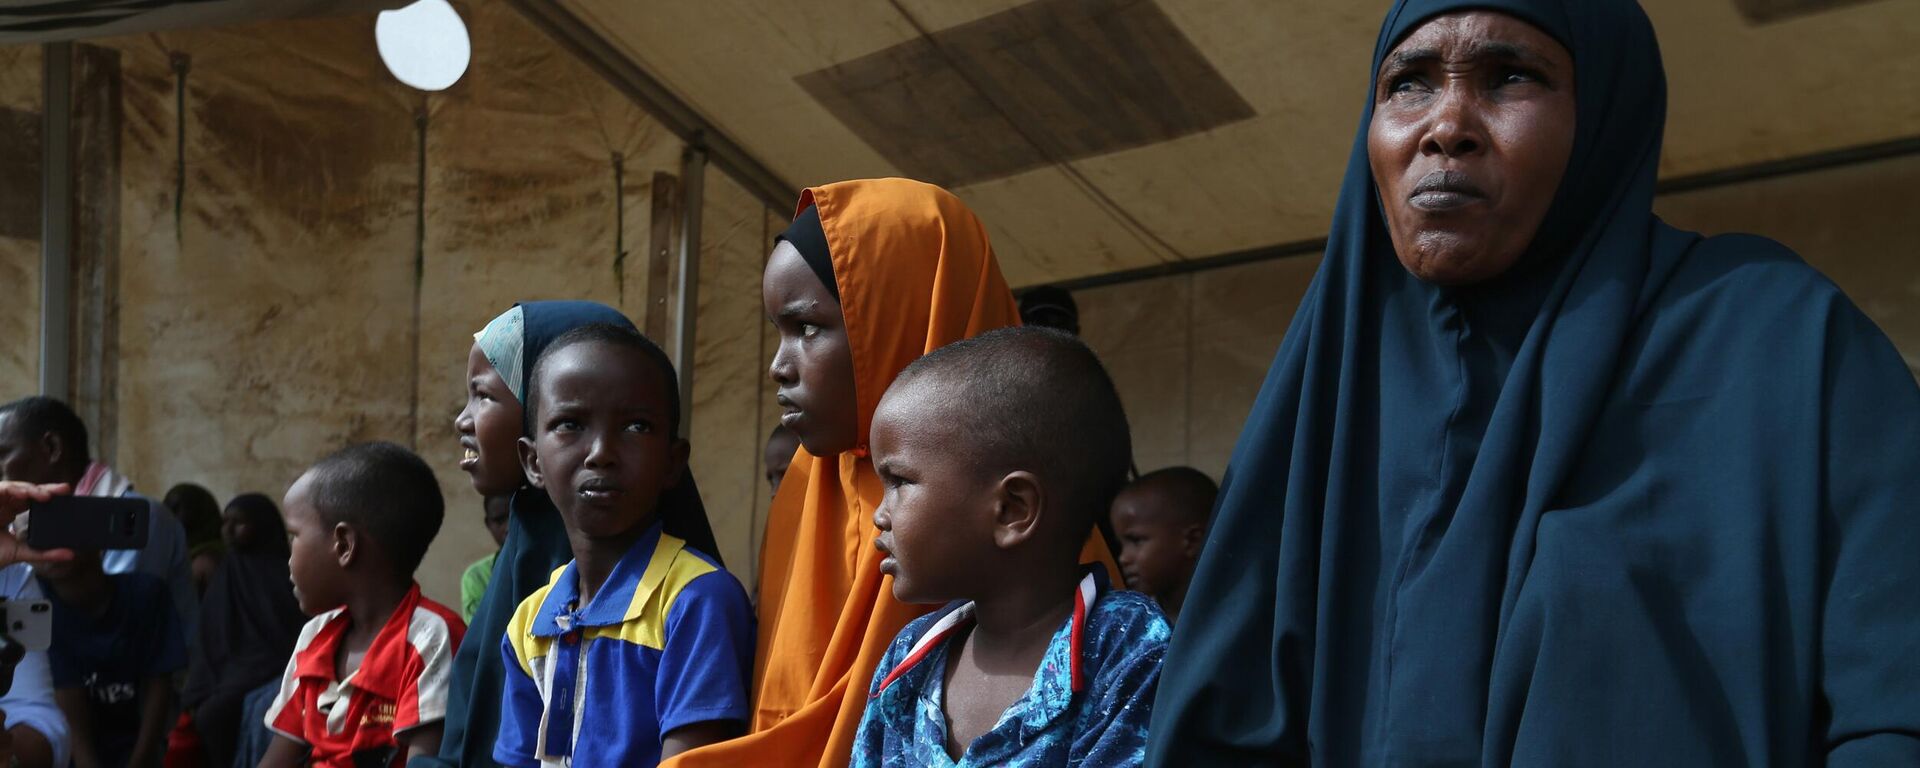 Женщина и дети из Сомали, находящиеся в лагере беженцев в Дадаабе, Кения, 12 апреля 2018 года  - Sputnik Latvija, 1920, 25.04.2022